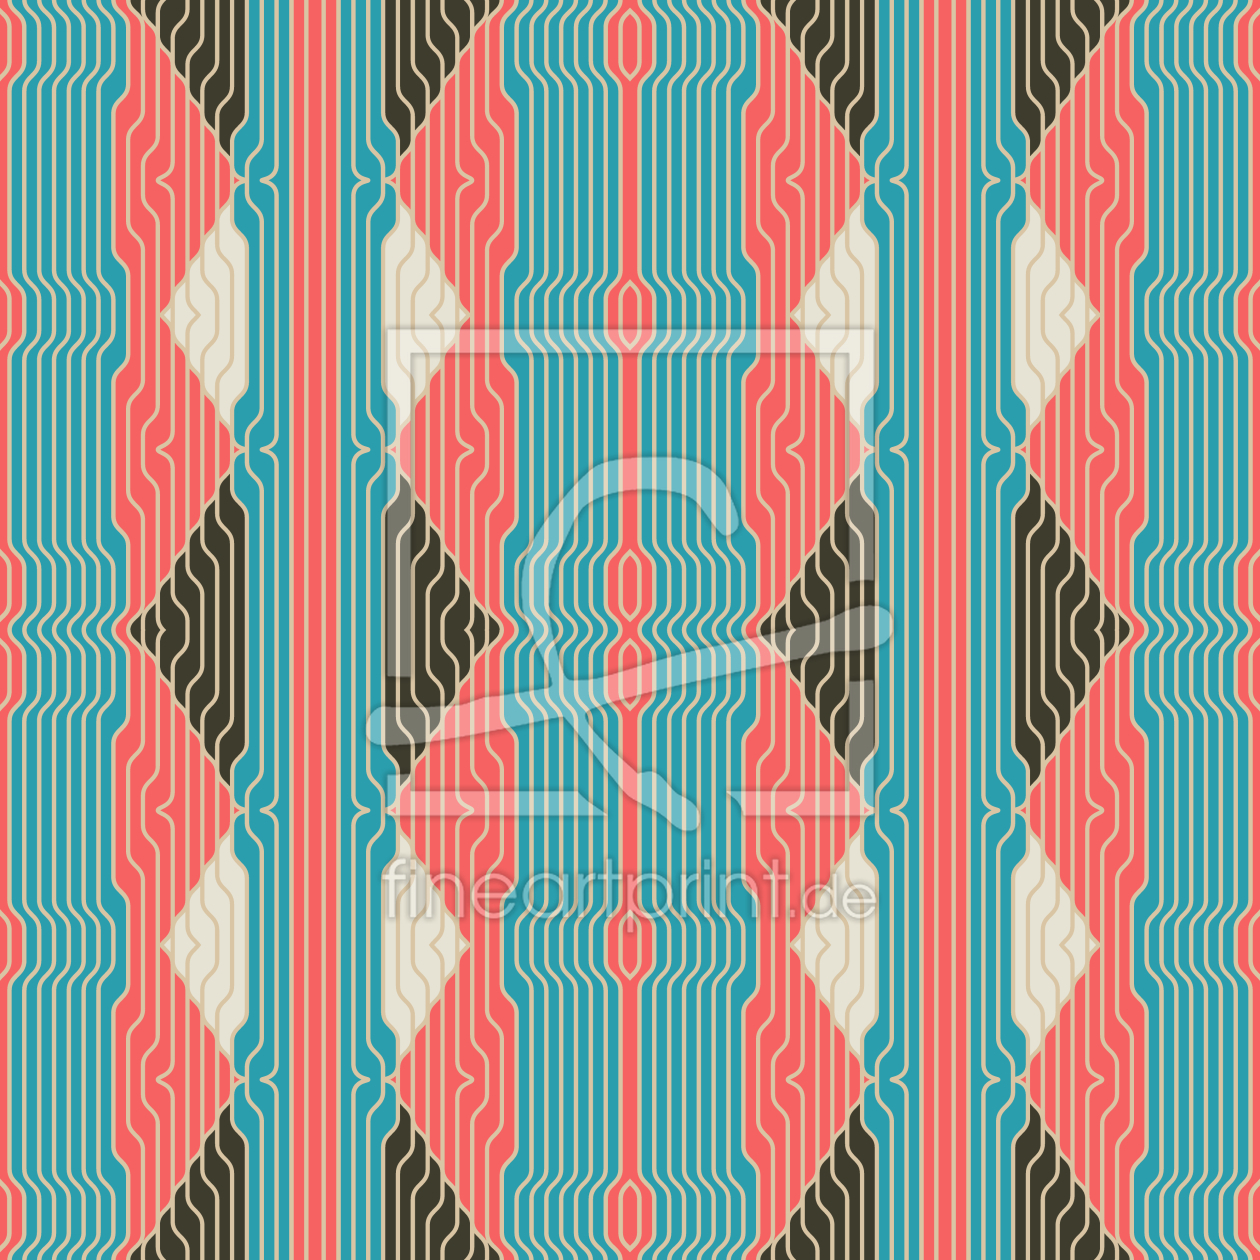 Bild-Nr.: 9013296 Verschiedene Elemente in Streifen erstellt von patterndesigns-com